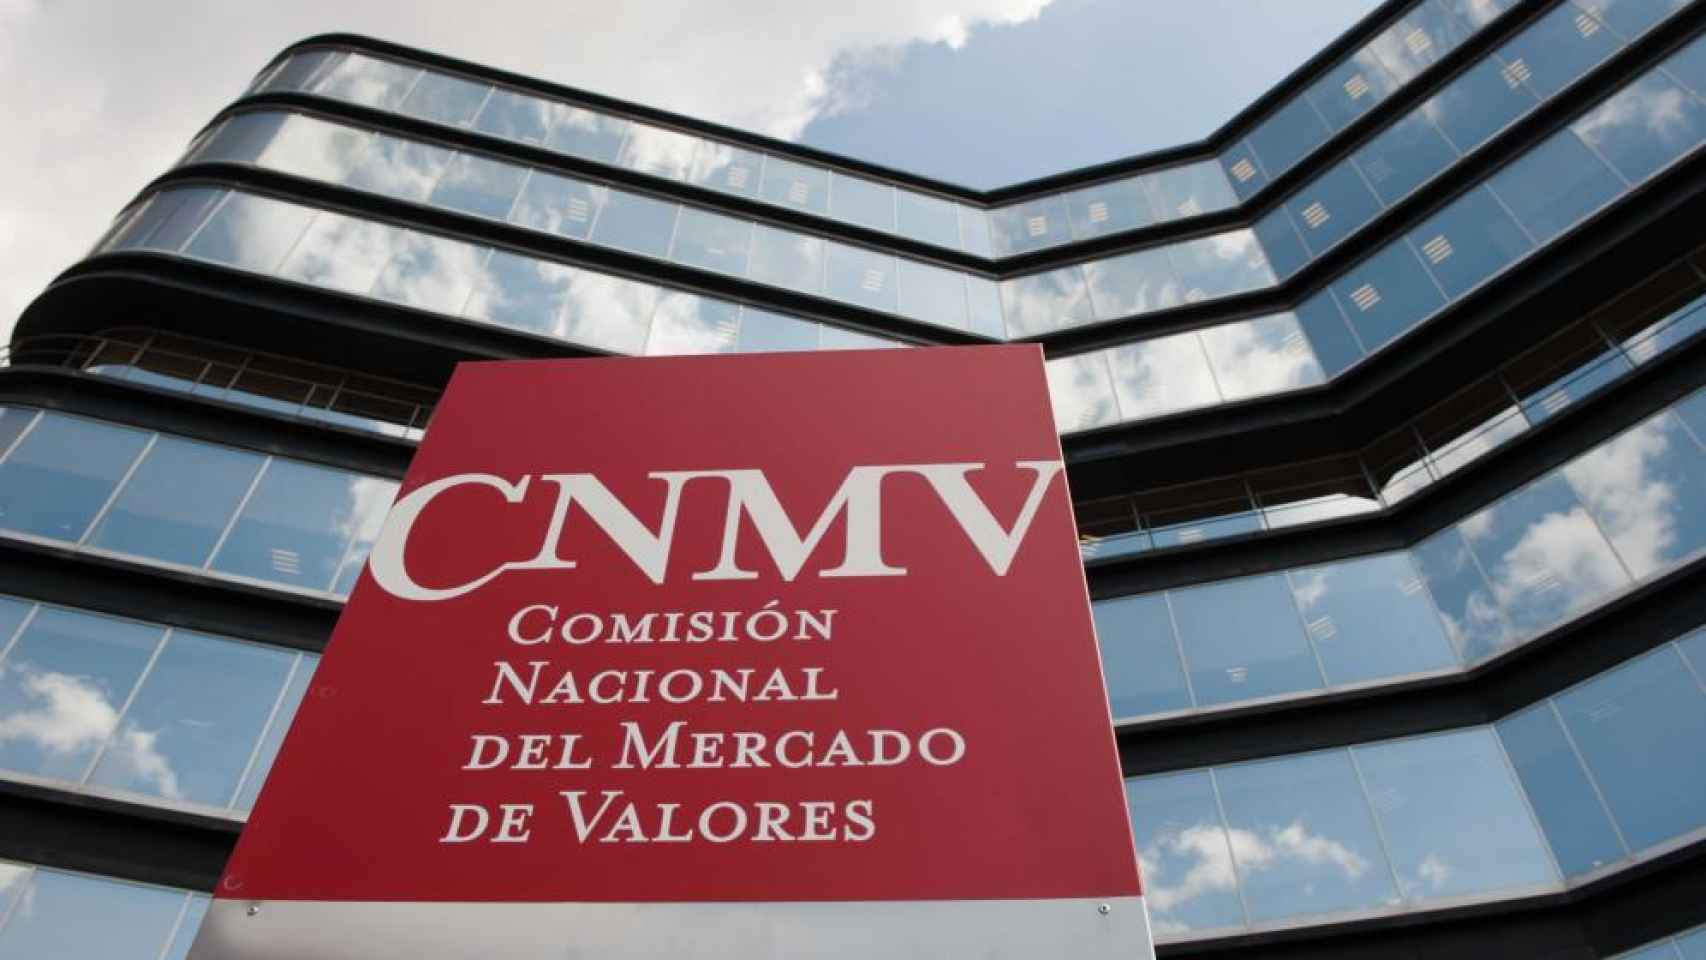 La Comisión Nacional del Mercado de Valores (CNMV) busca artimañas de los bancos.